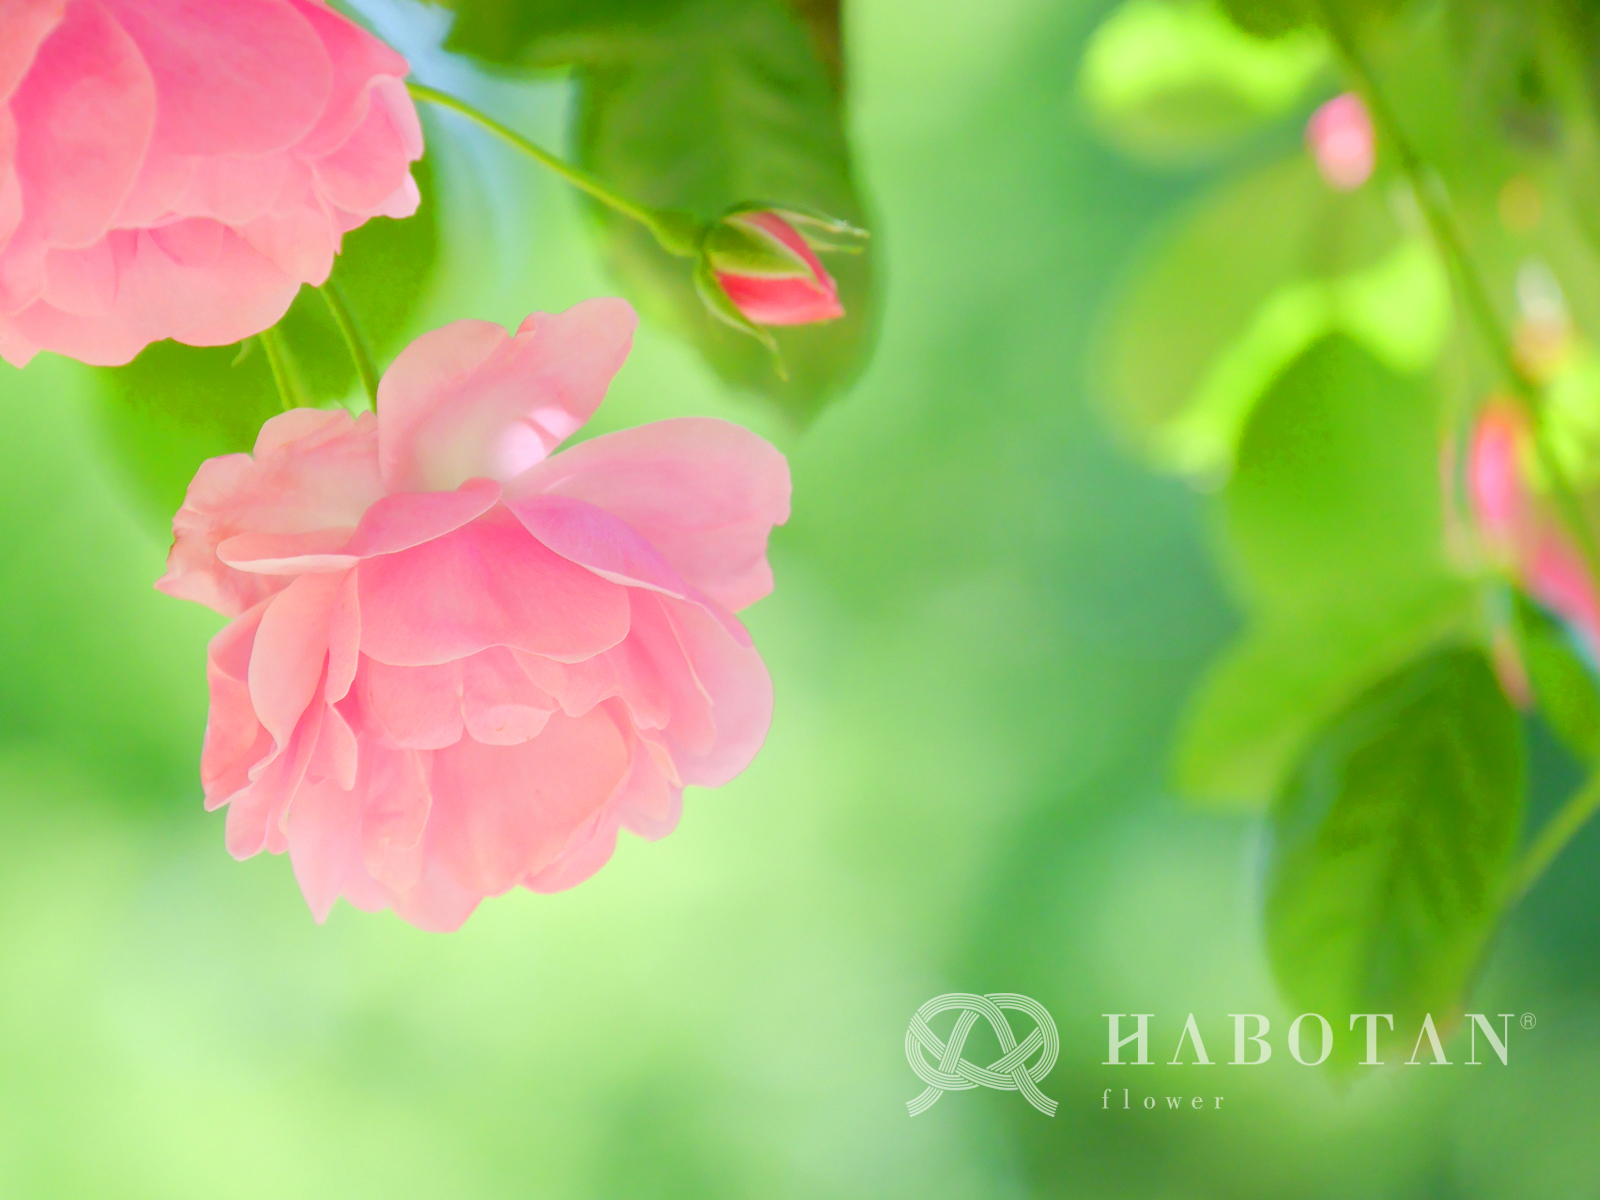 お花の壁紙プレゼント 法人 個人花の配達 ギフト Habotan Flower ハボタンフラワー